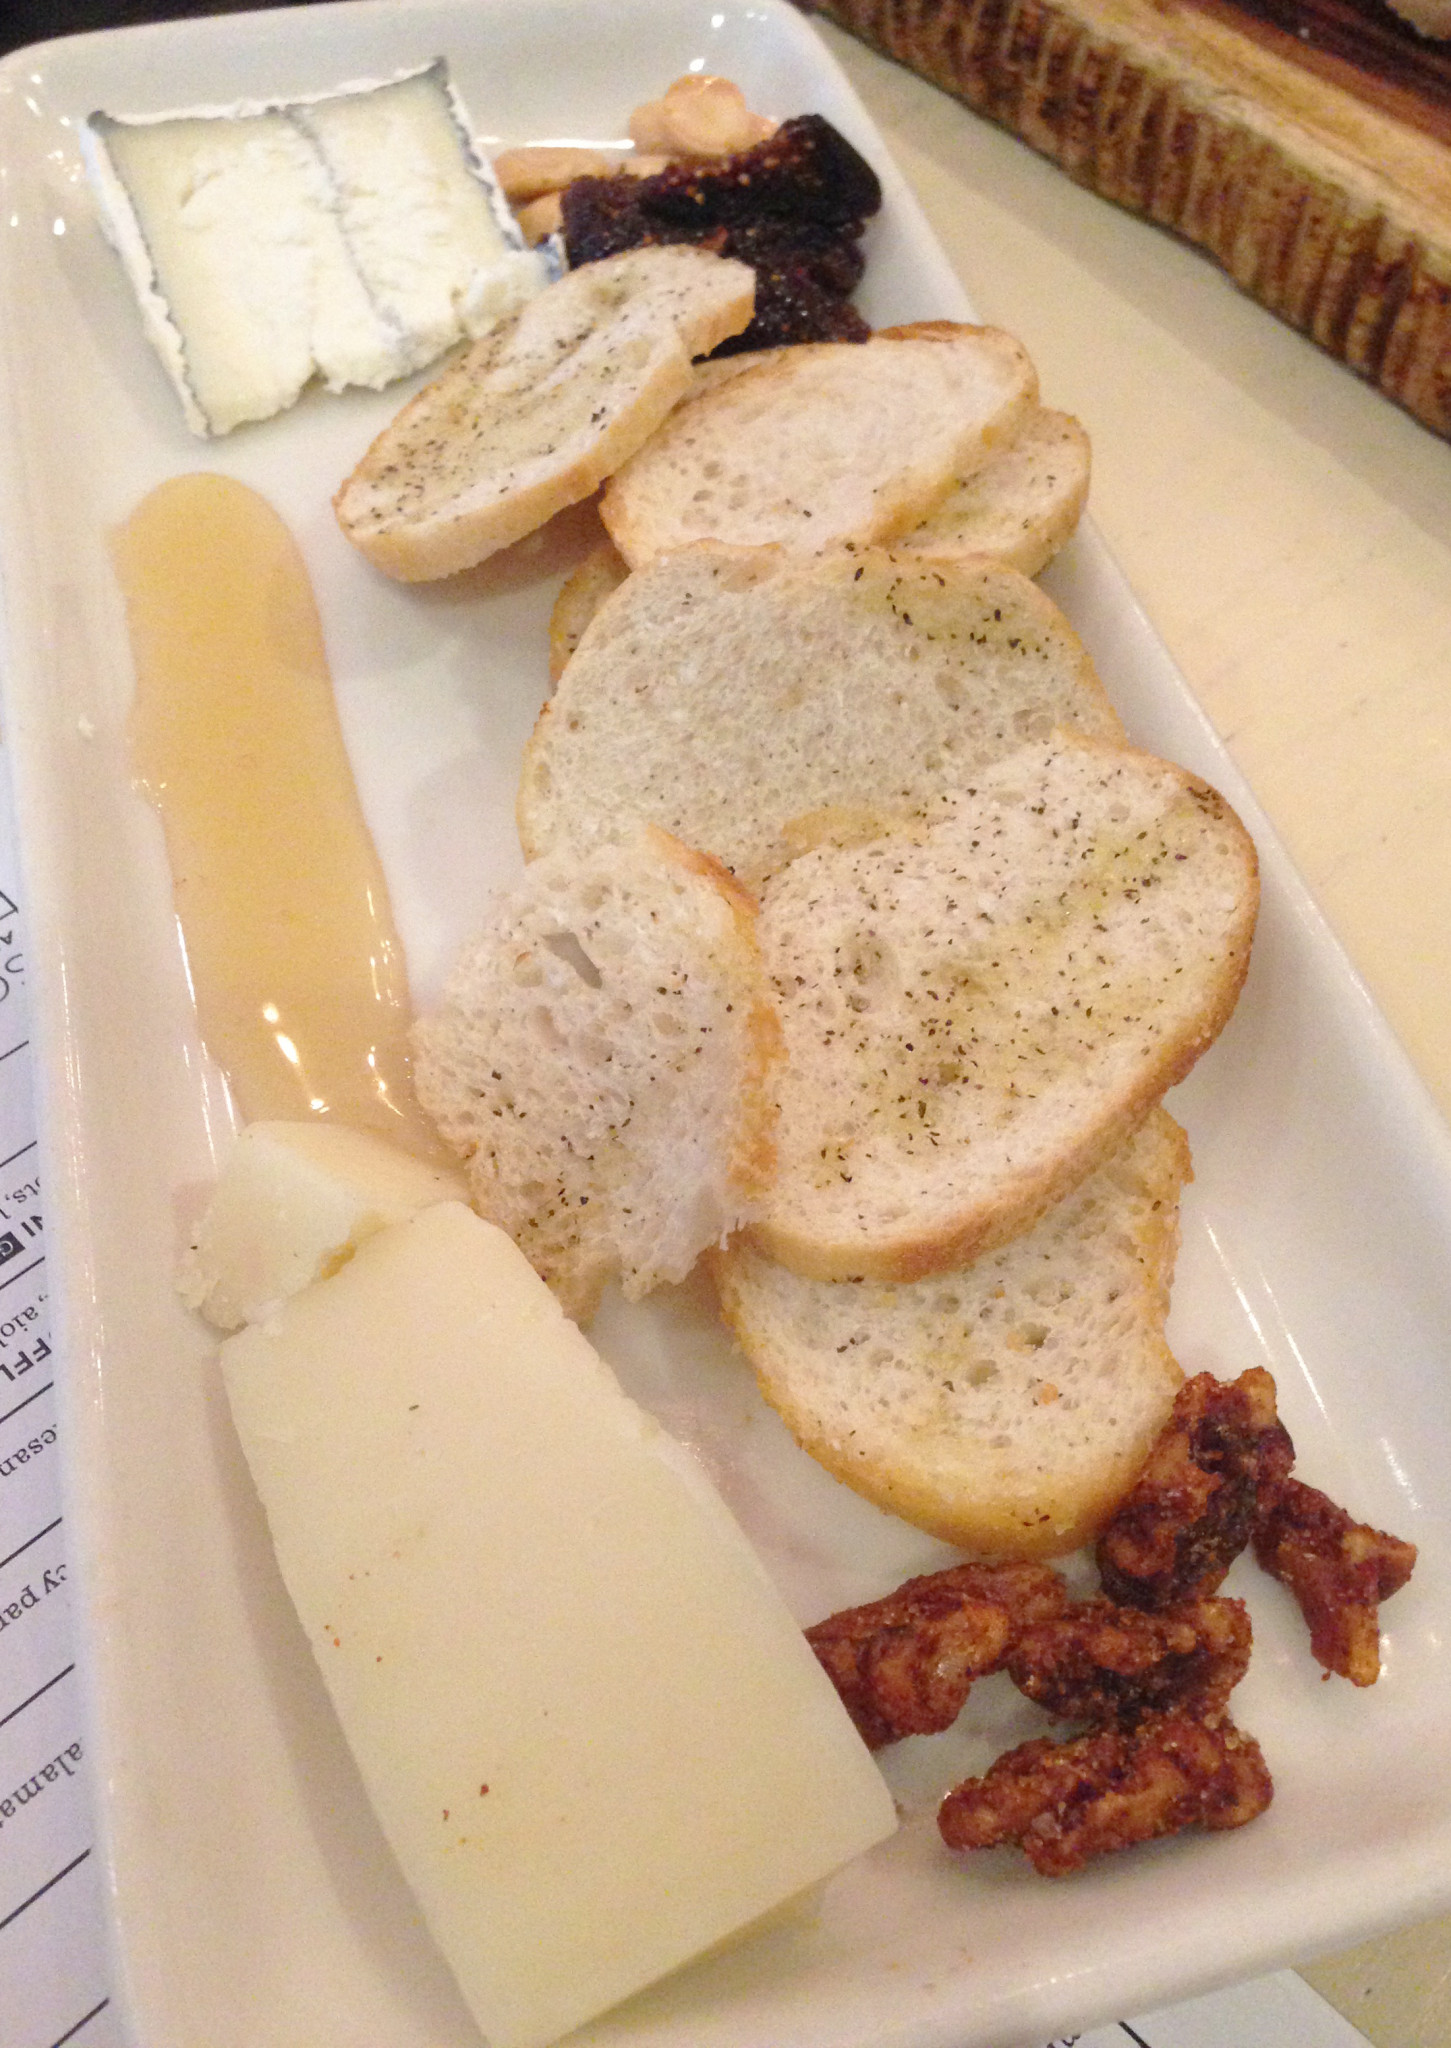 Taverna - Cheese Plate